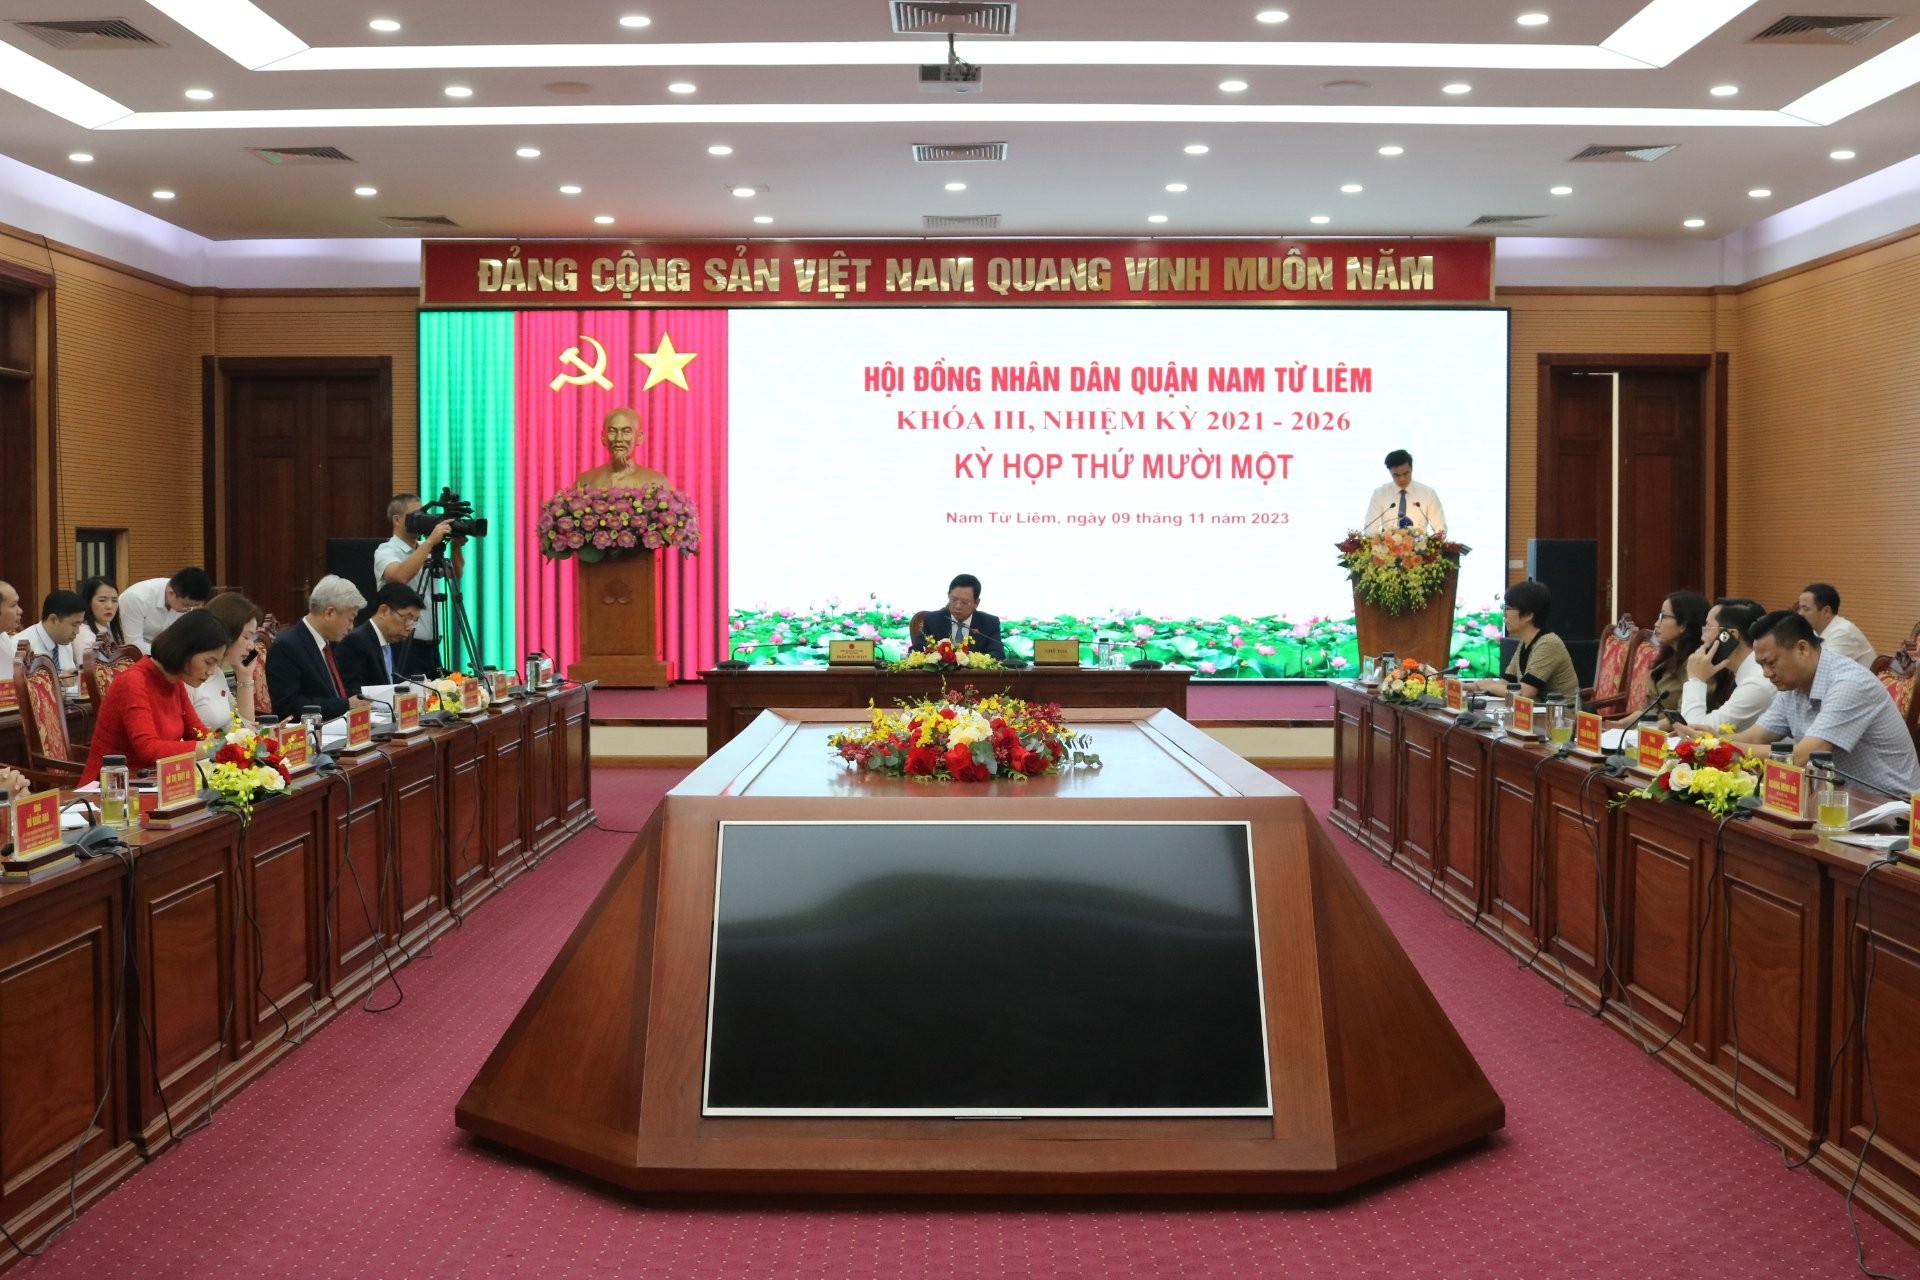 Đồng chí Mai Trọng Thái trúng cử chức danh Chủ tịch Ủy ban nhân dân quận Nam Từ Liêm